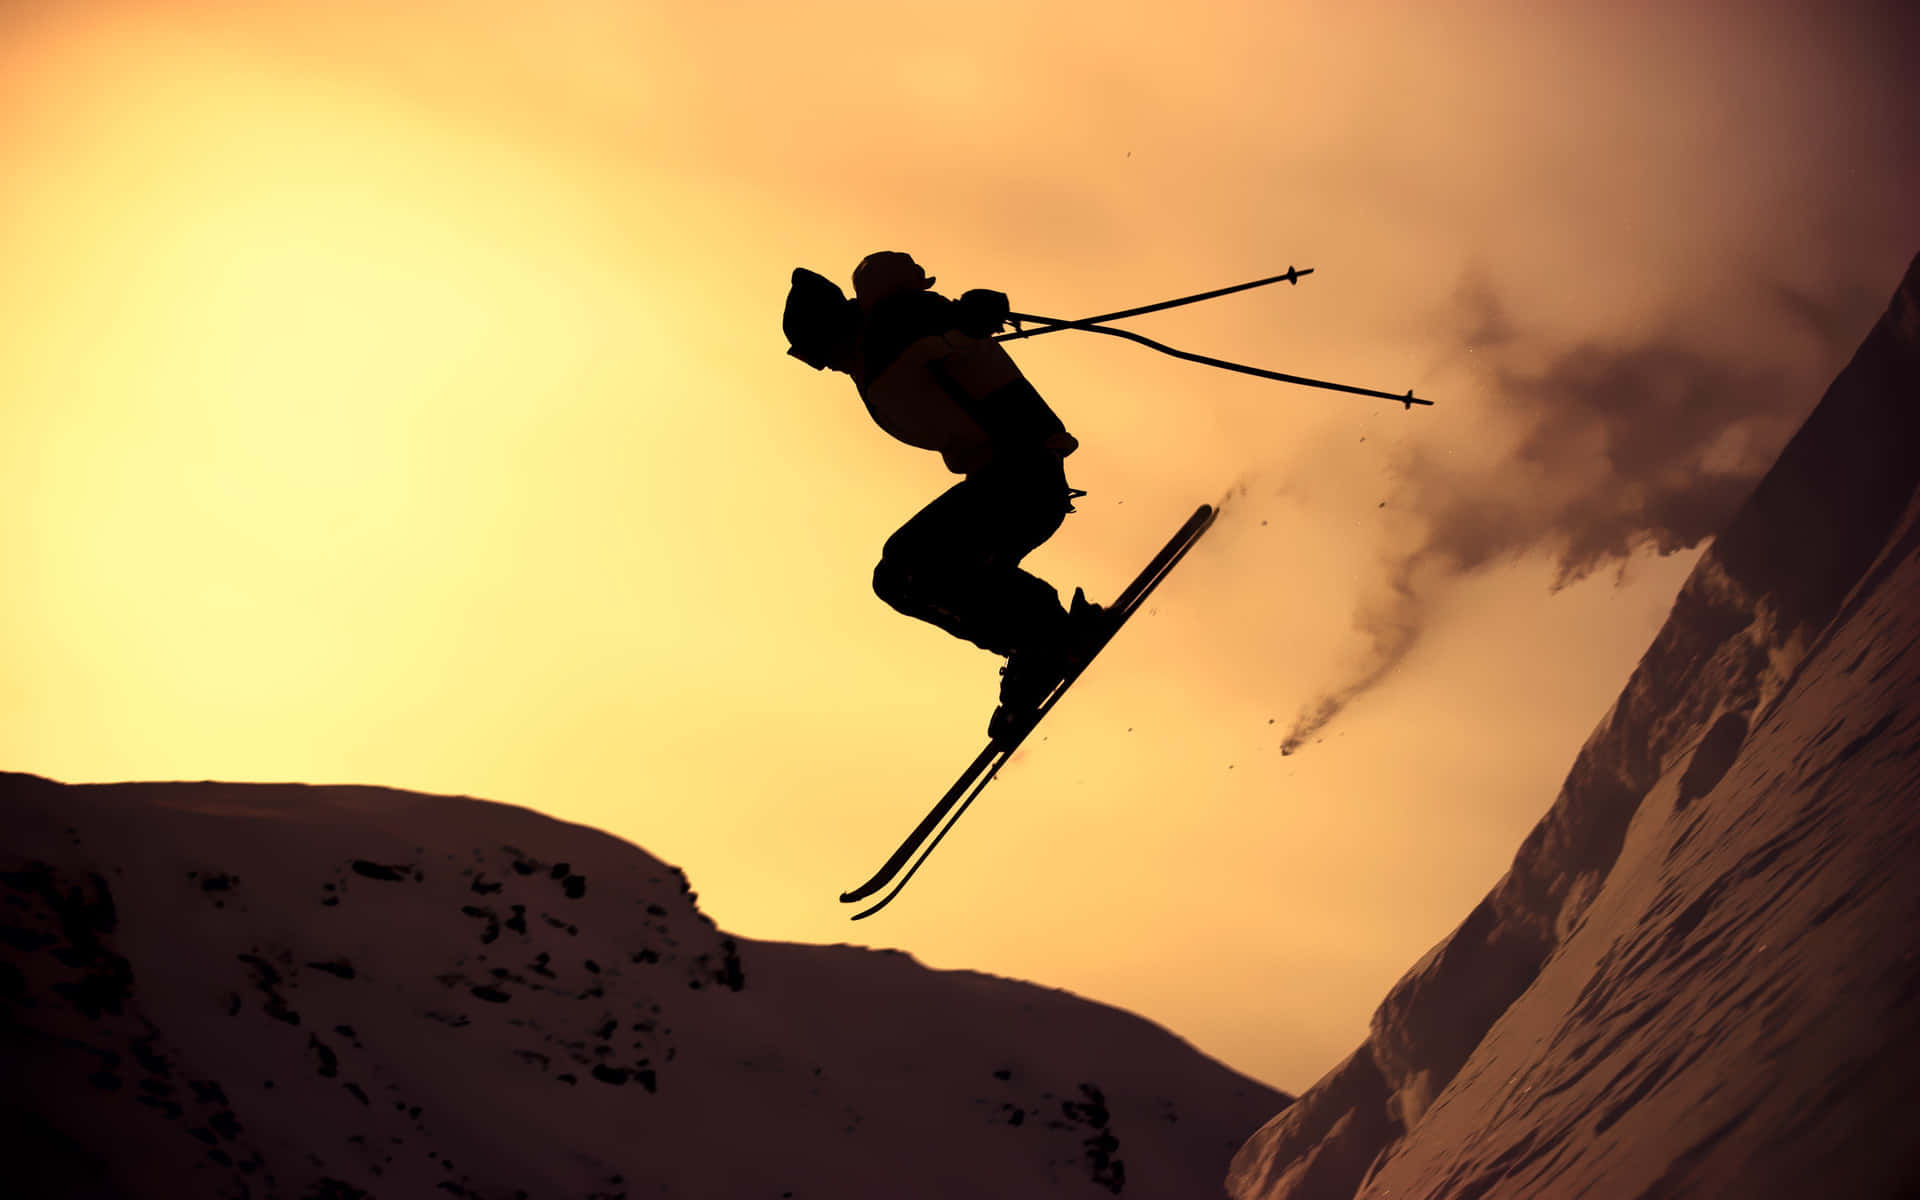 Captivating Skier Descending an Alpine Slope